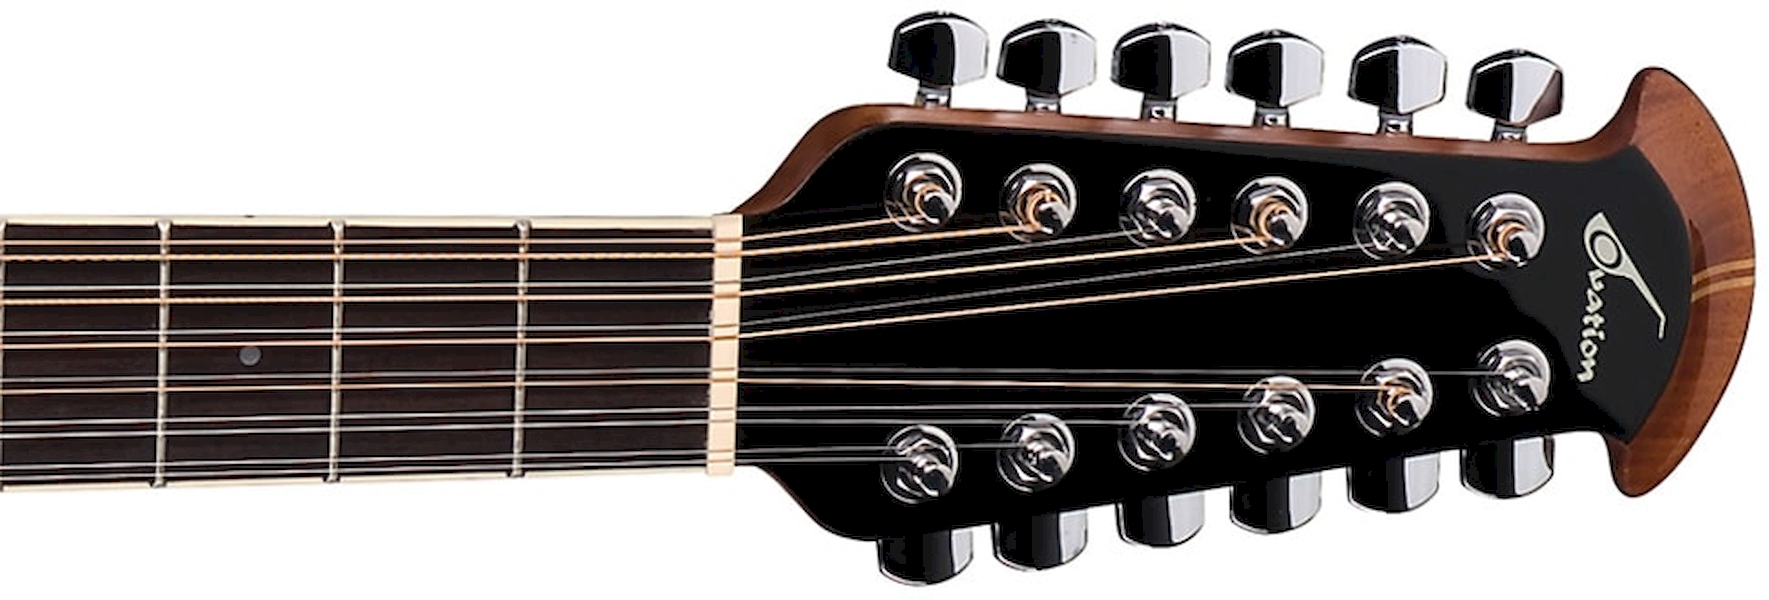 Электроакустическая гитара Ovation 2758ax- 12 струнная. Электроакустическая гитара Ovation 2758ax-Neb Elite® Standard - New England Burst 12 струнная. Гитара Ovation 12 струн. Ovation 2758ax Standard Elite. Электрогитары 12 струн